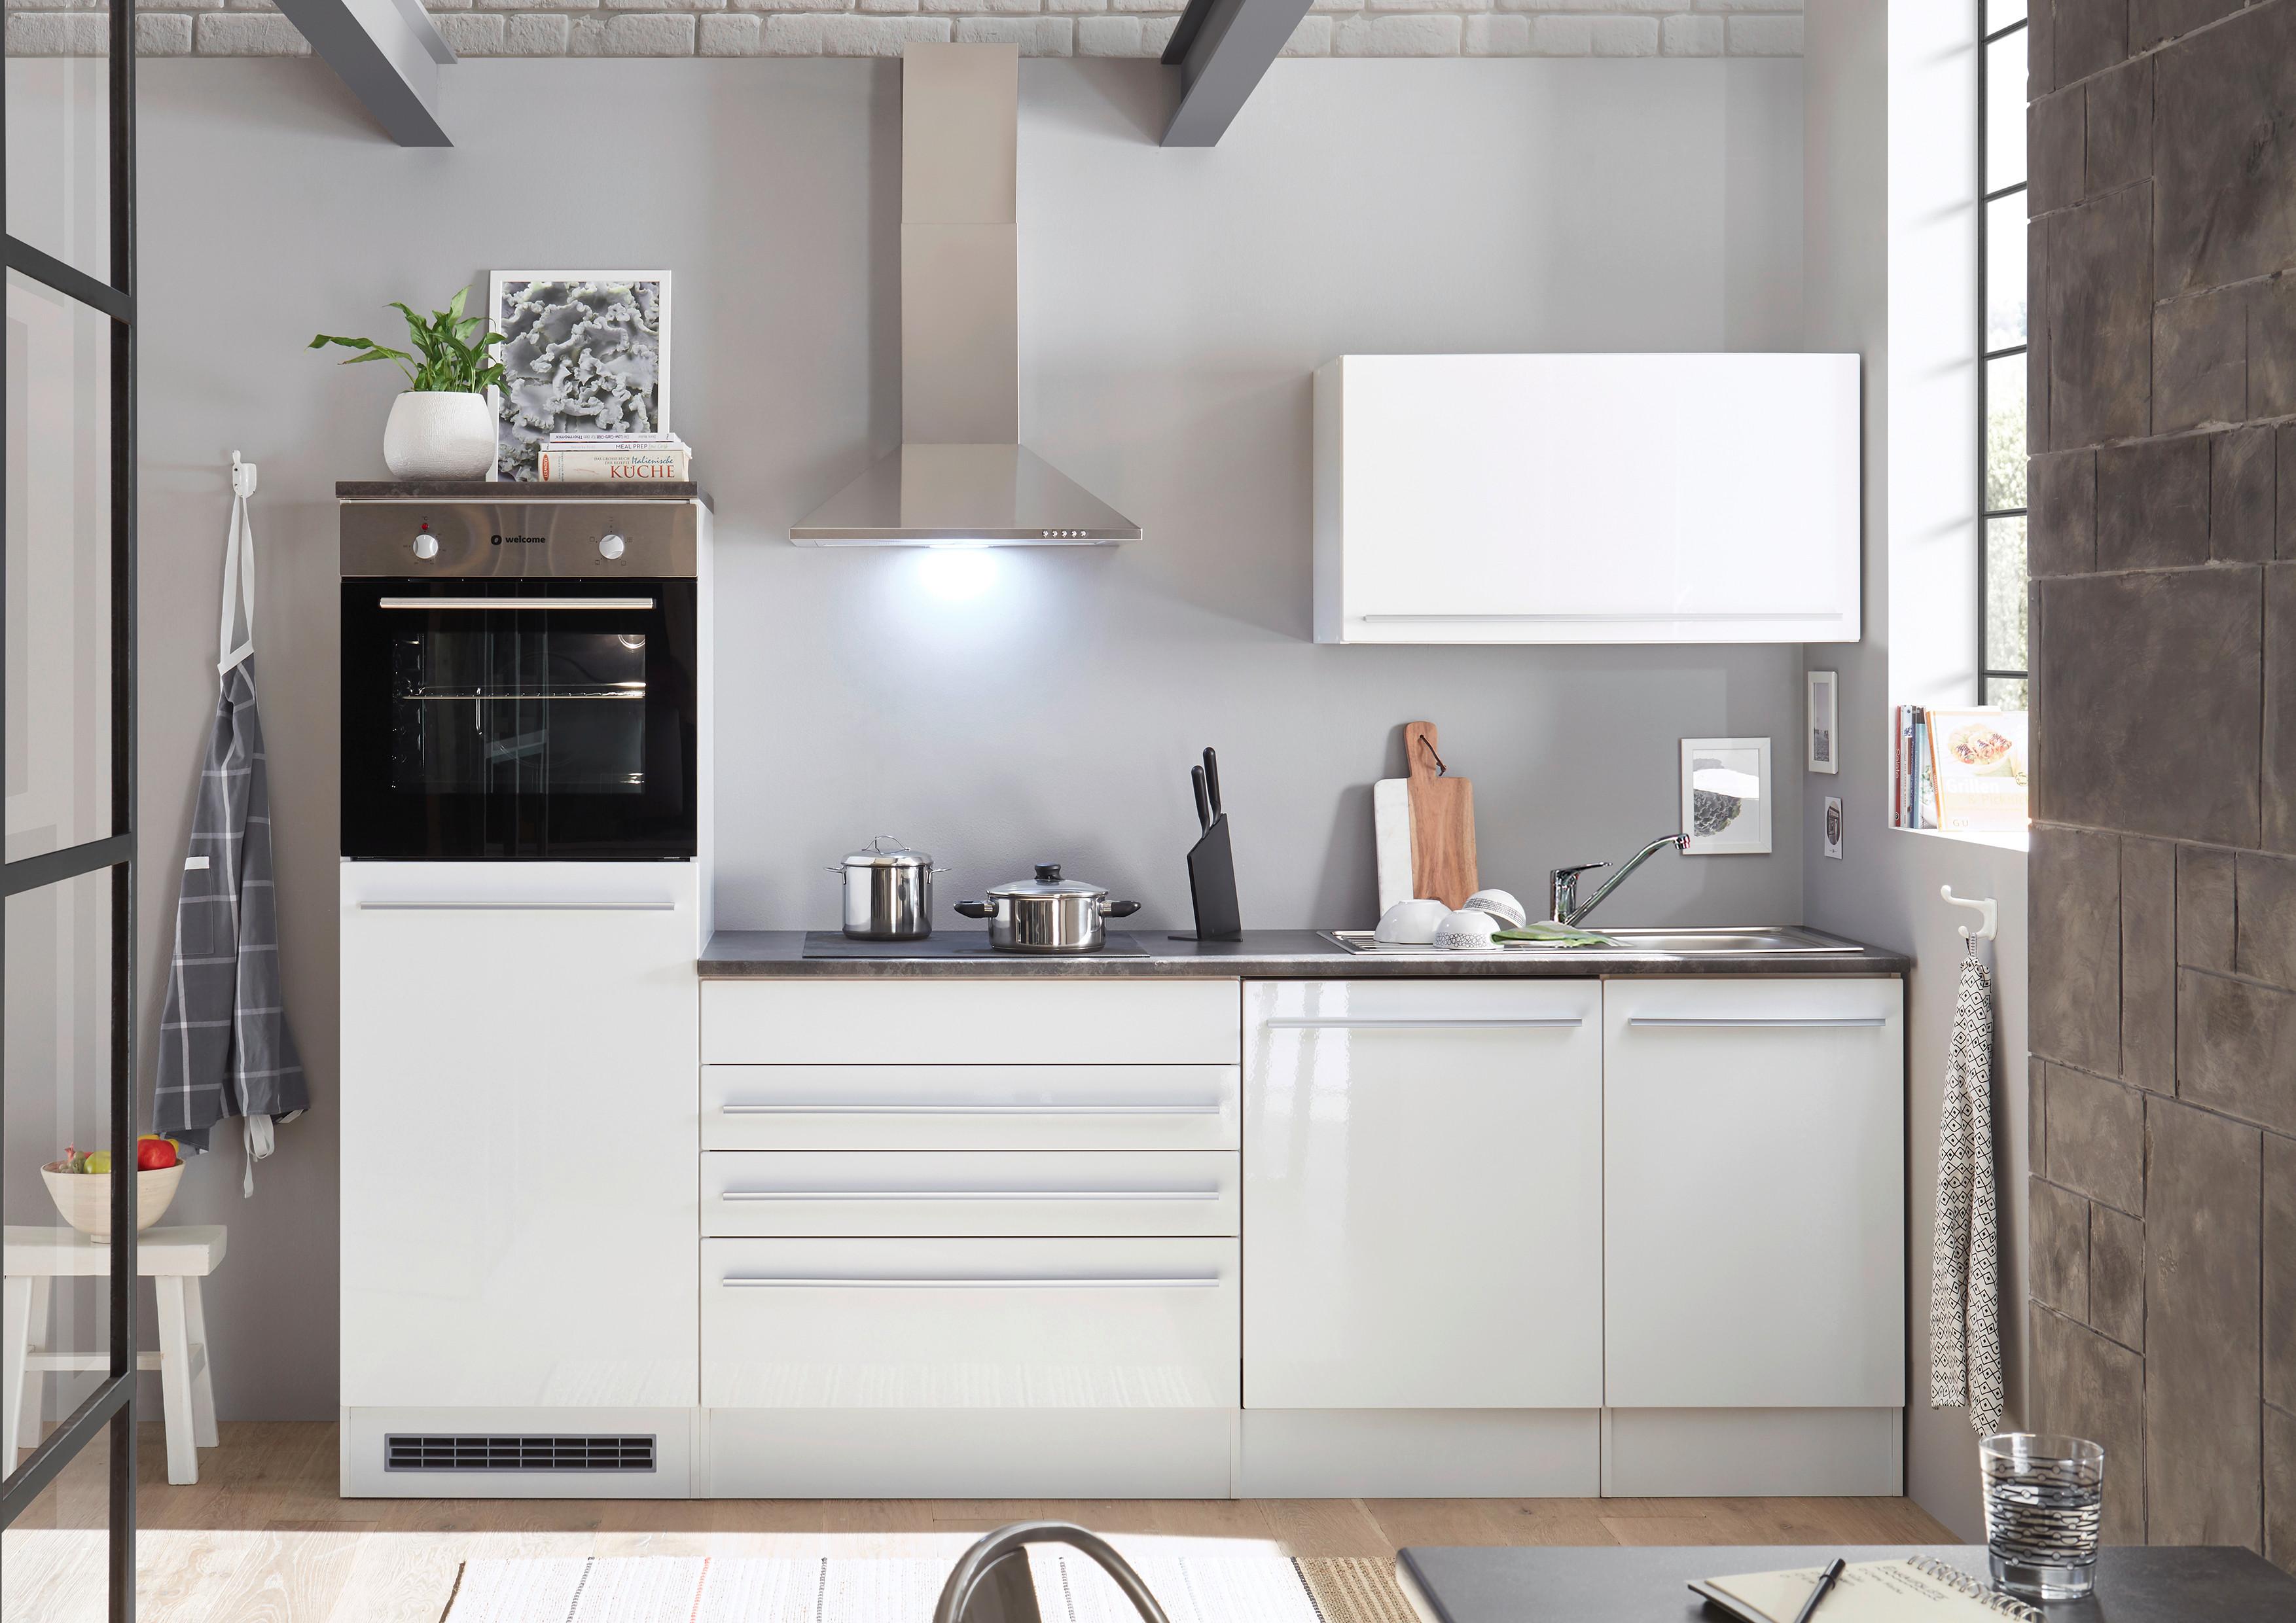 Kuhinjski Blok Bez Uređaja Jazz 6 - bijela/tamno siva, Modern, drvni materijal (260/200/60cm) - Modern Living